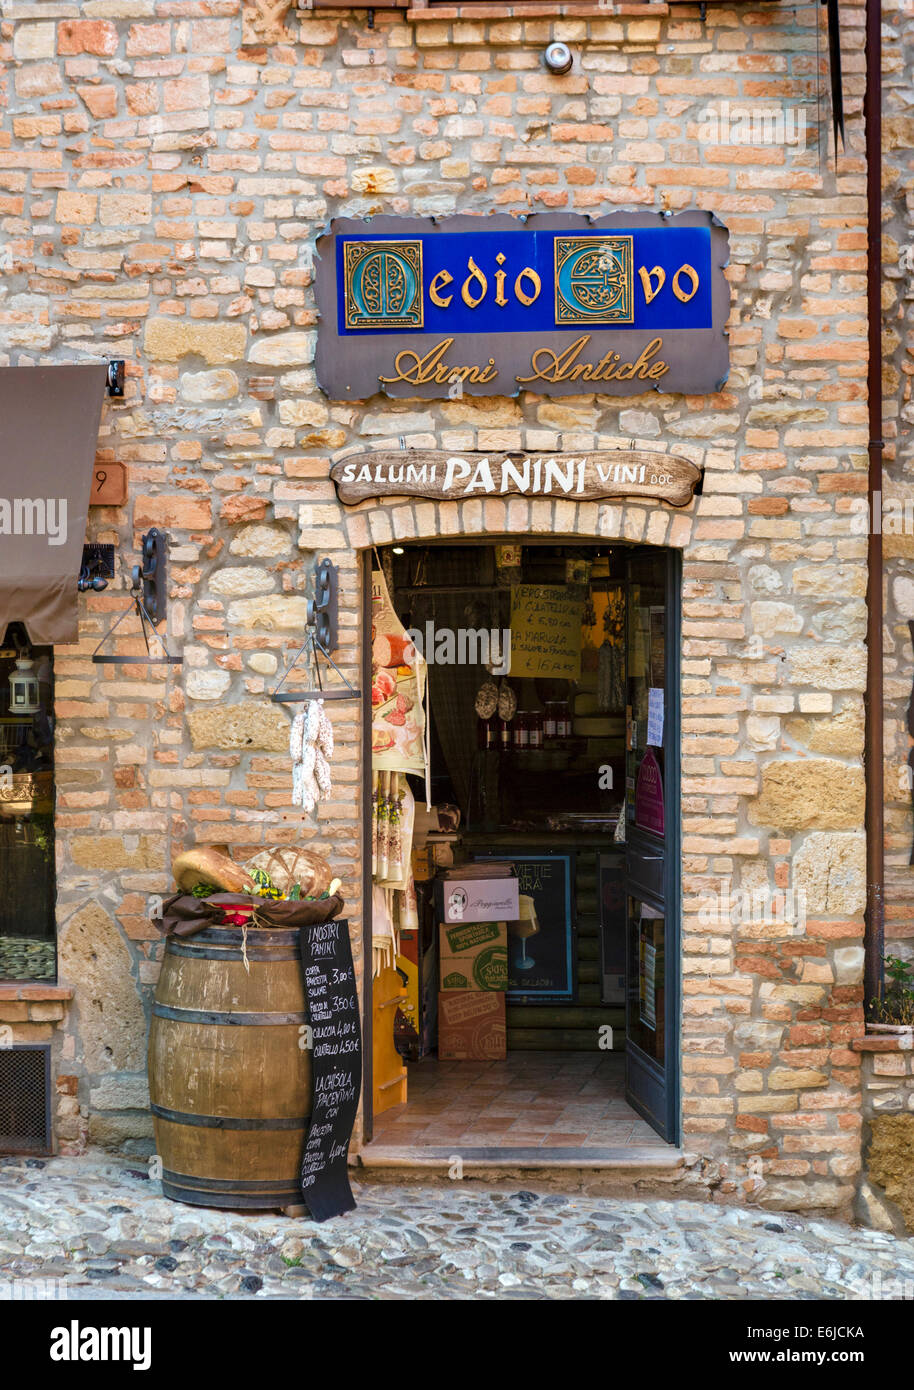 Tradizionale negozio di vendita di pane, vino e carni nel centro della città vecchia medievale di Castell'Arquato, Piacenza, Emilia Romagna, Italia Foto Stock